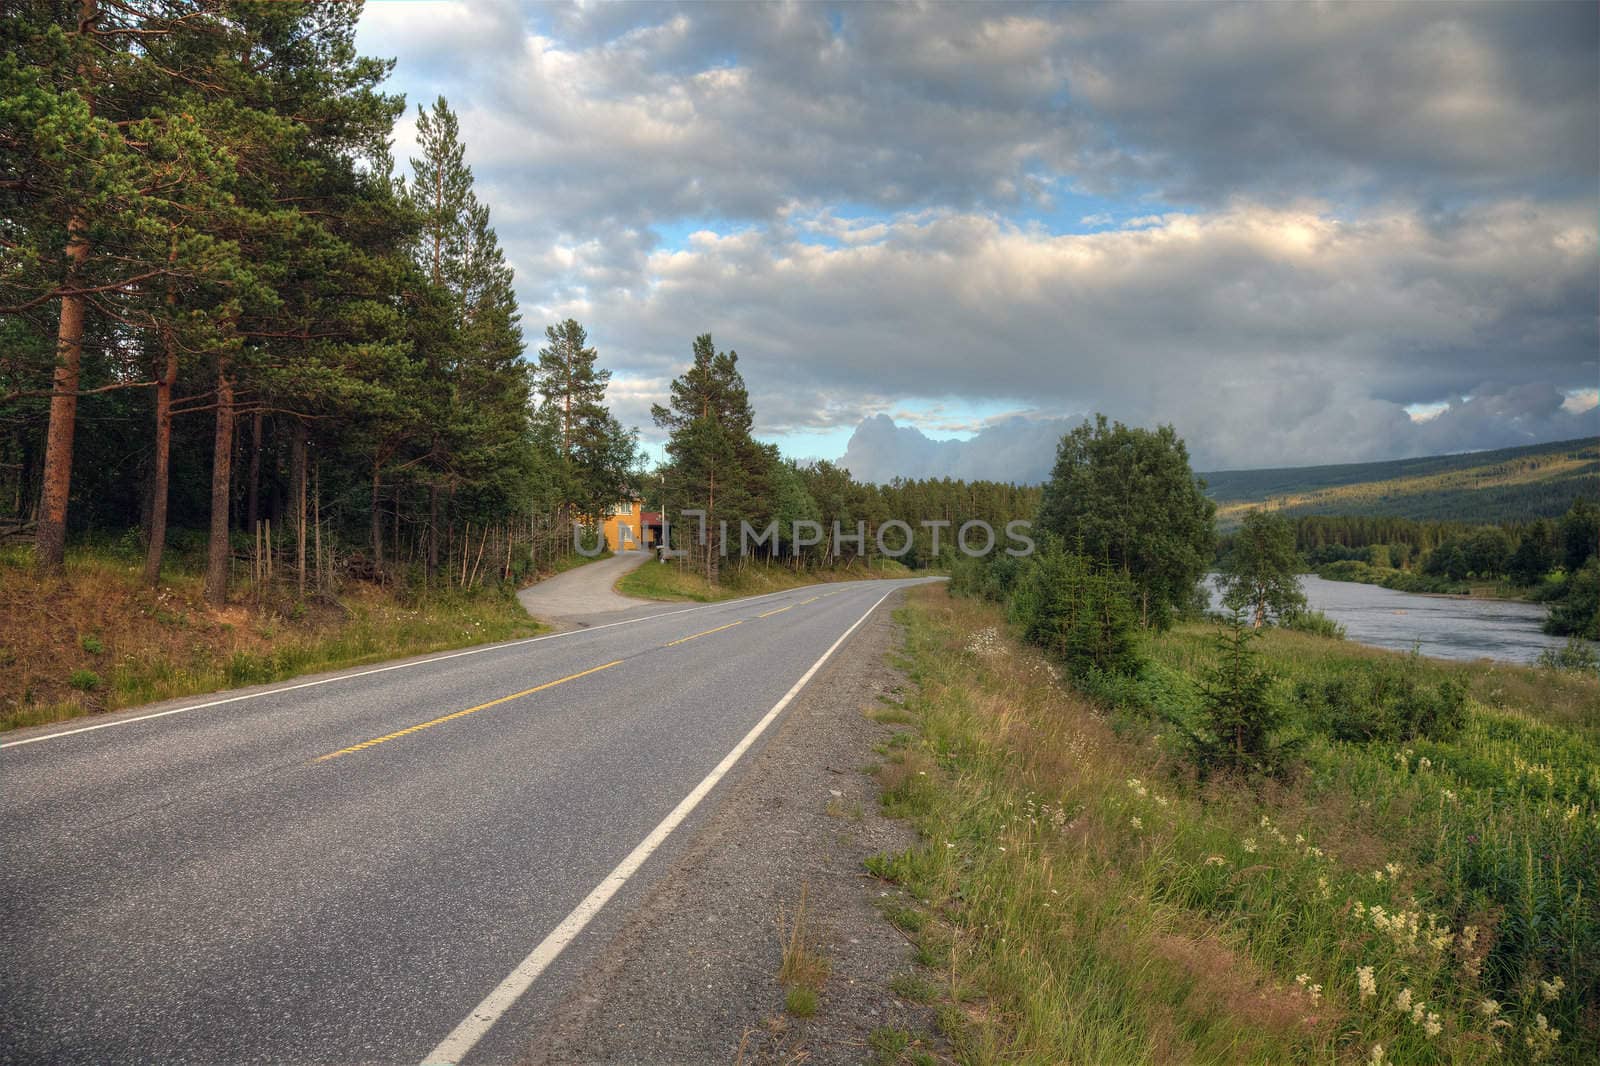 Road through picturesque norwegian landscape, Europe.